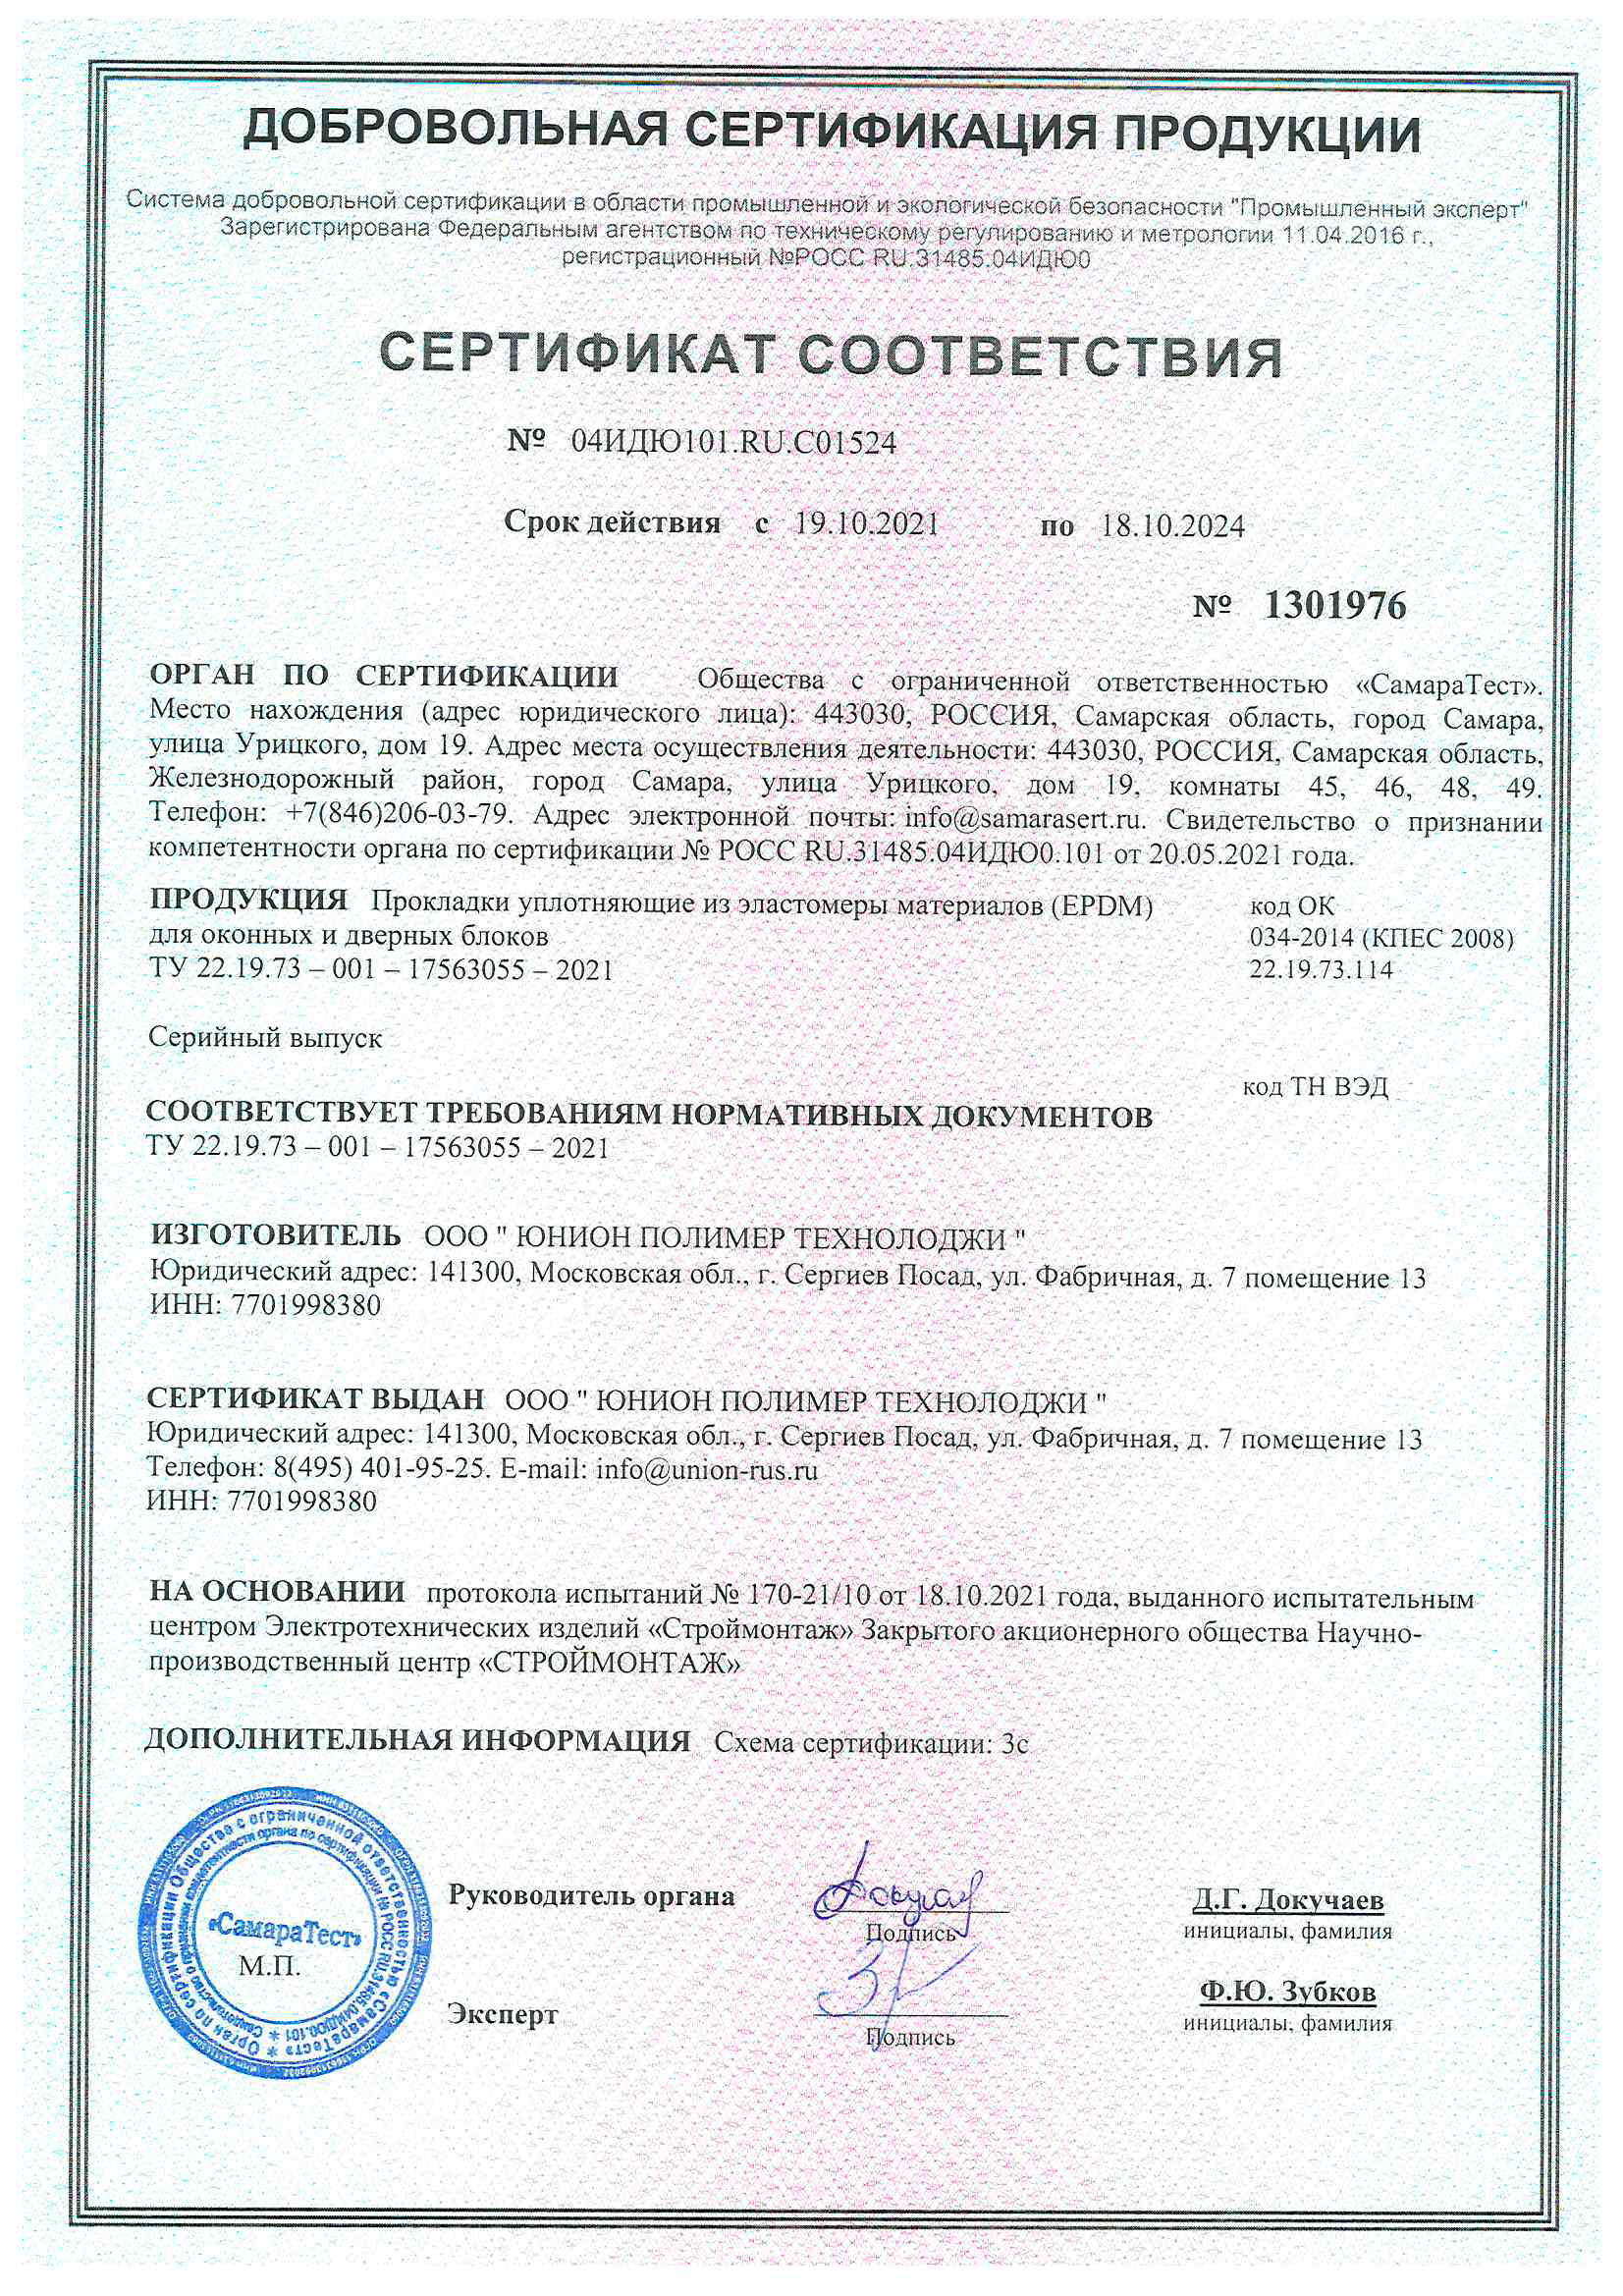 Сертификат прокладки уплотняющей для оконных и дверных блоков - 18.10.2024